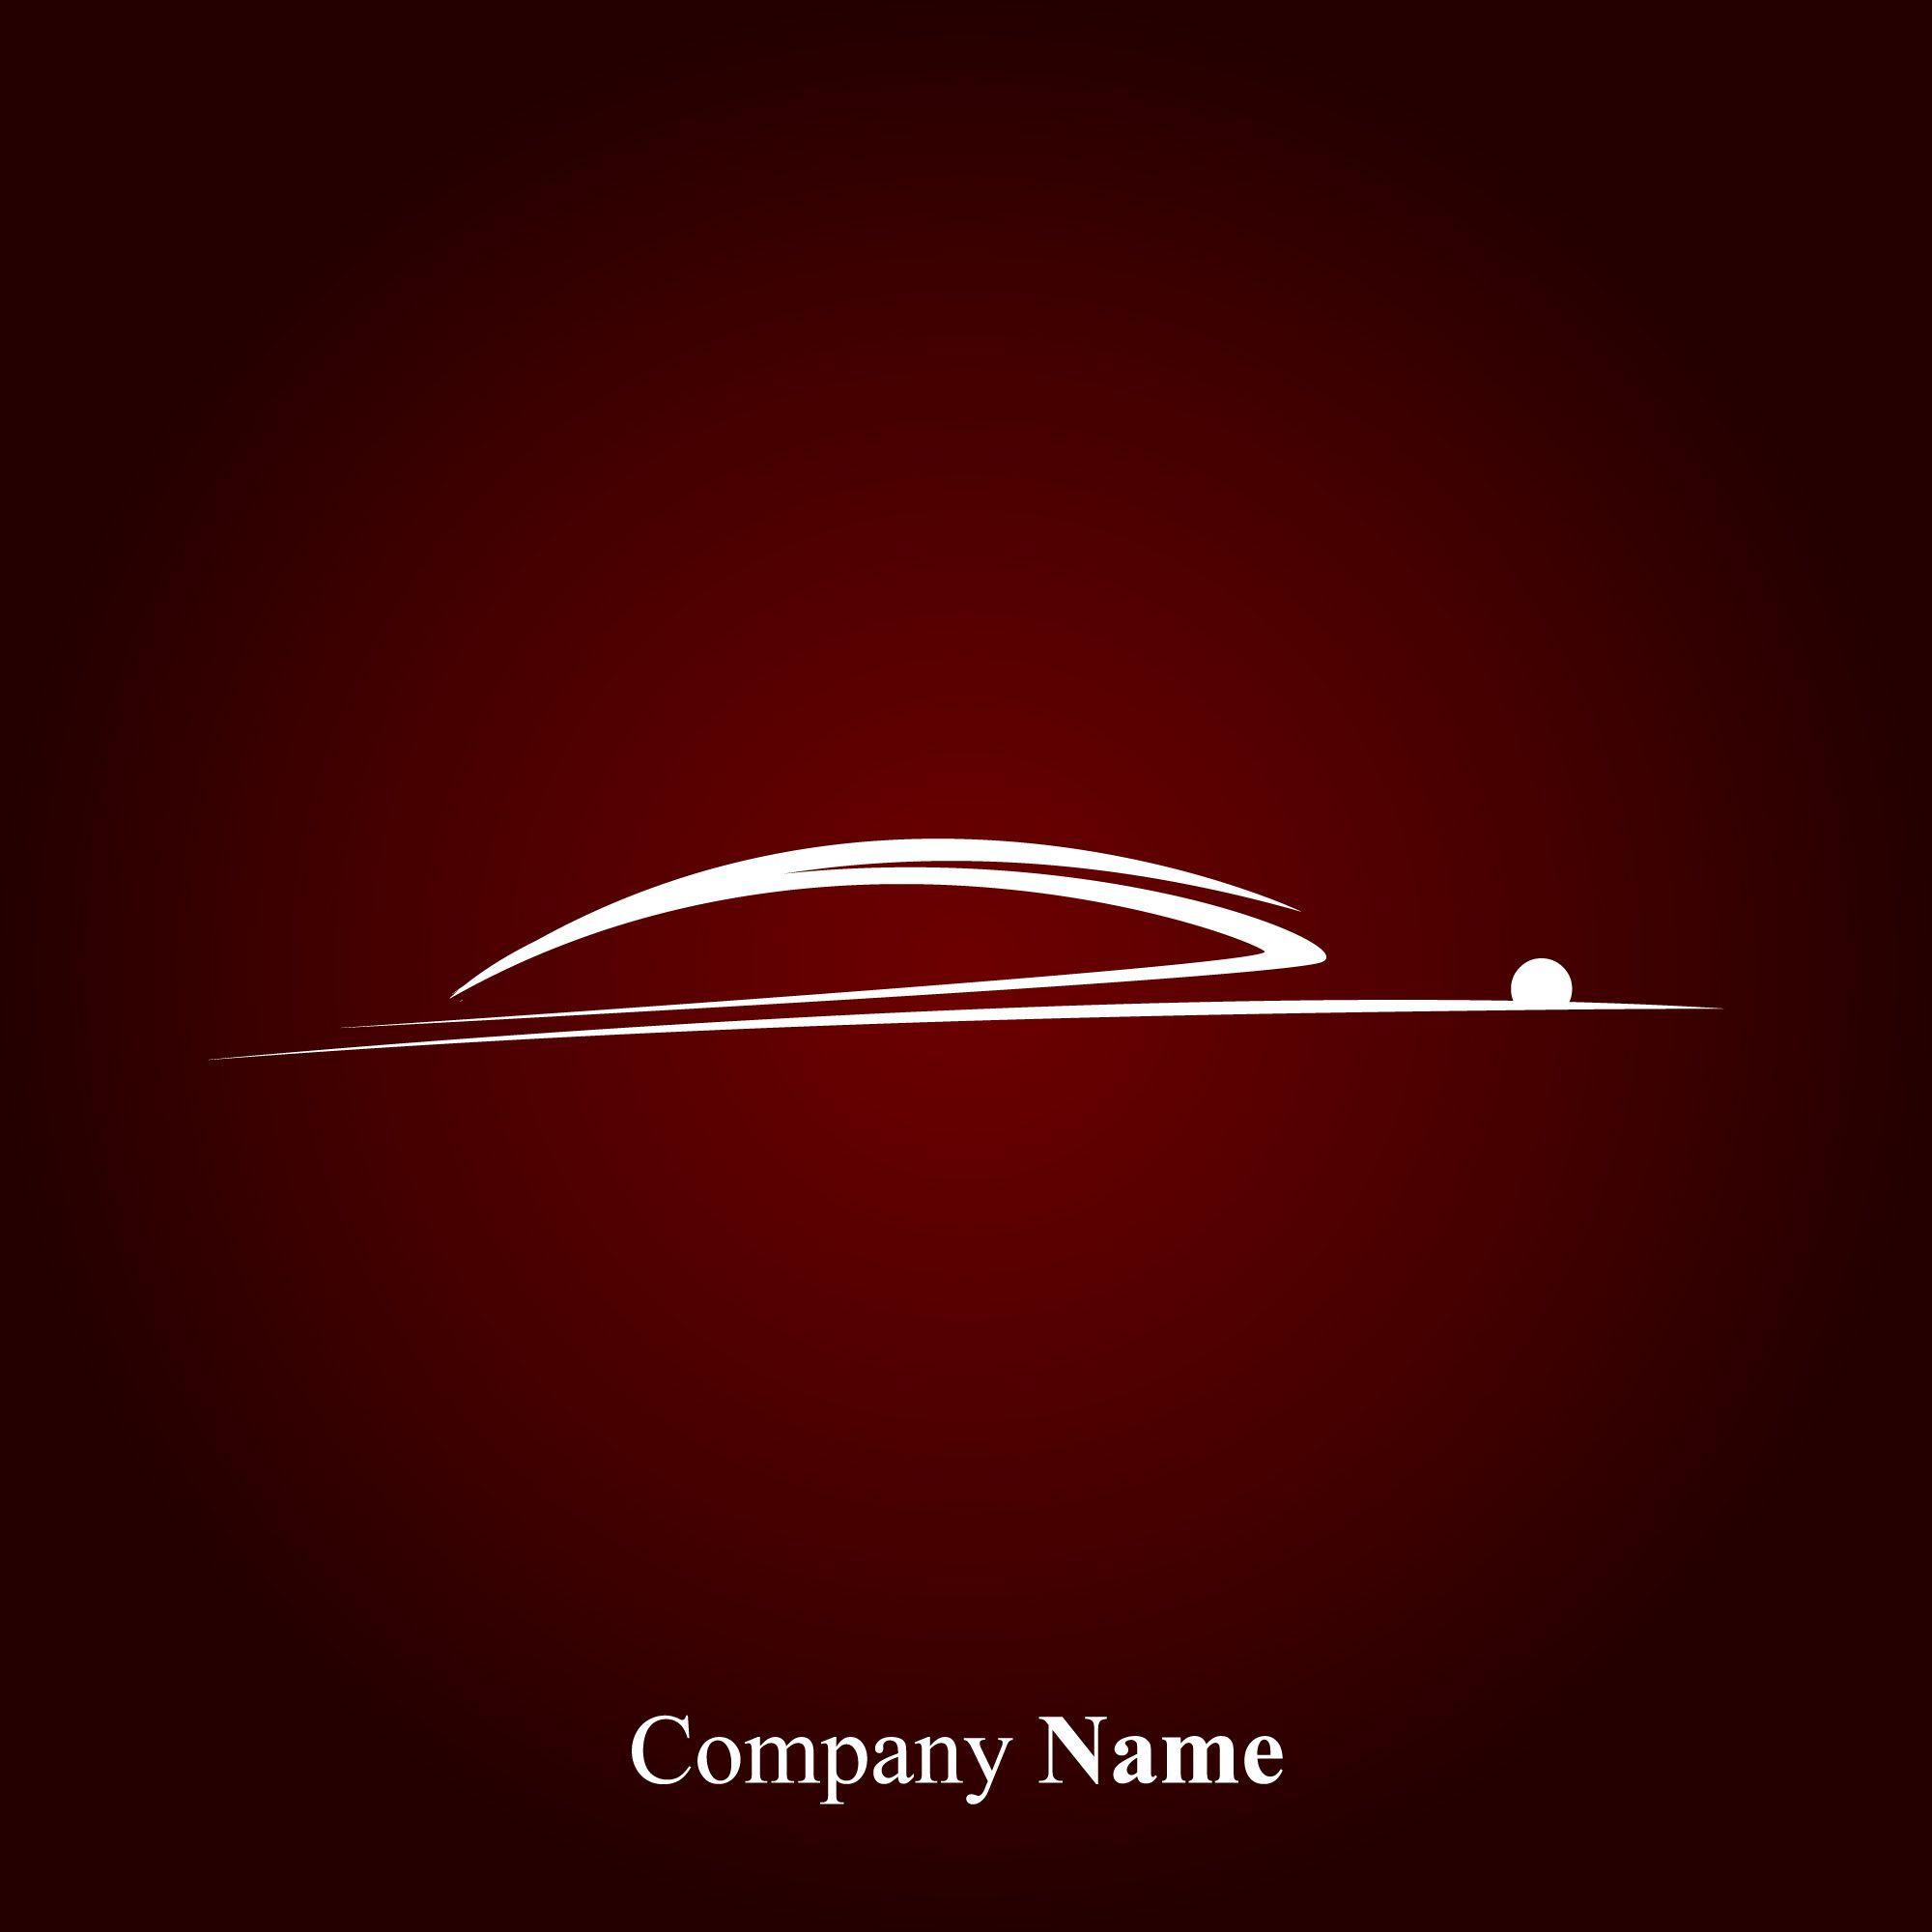 Creative Car Logo - Creative Car logos design vector 04 free download